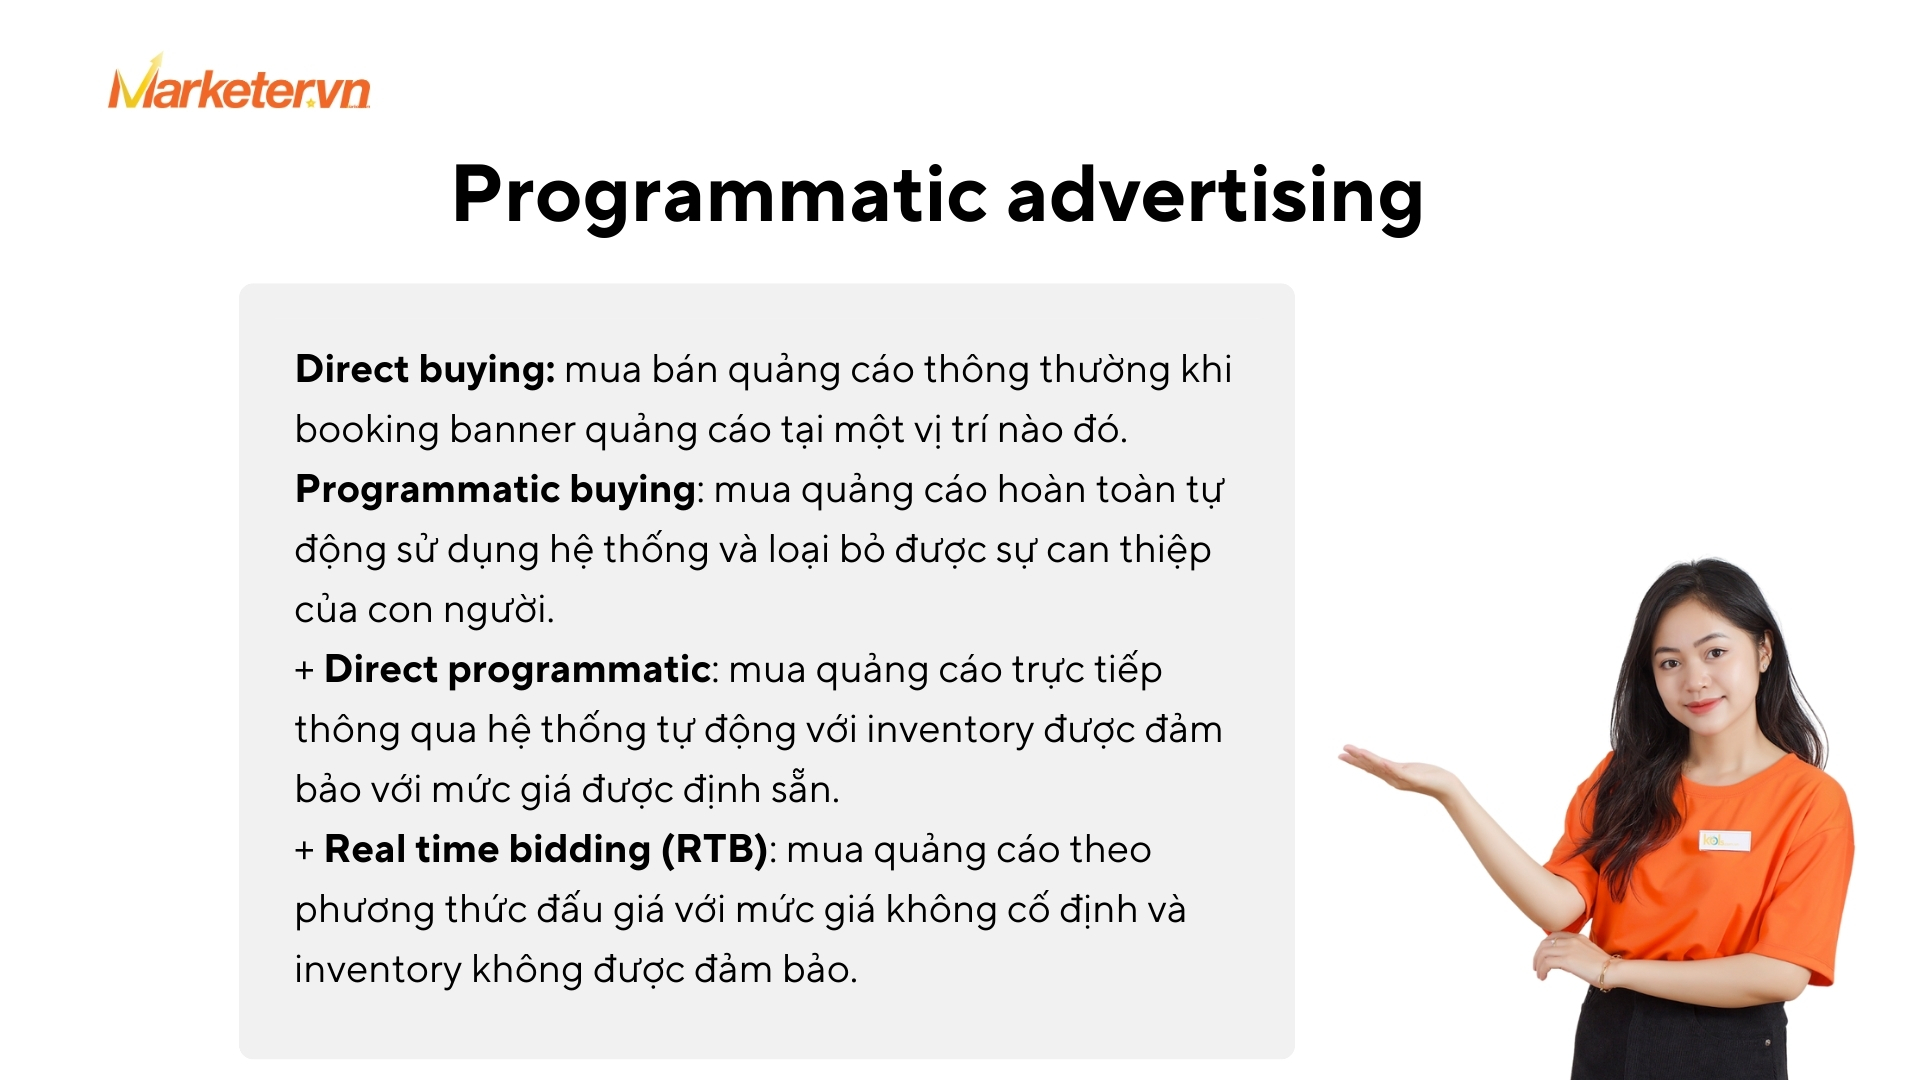 Programmatic advertising là gì và các hiểu nhầm